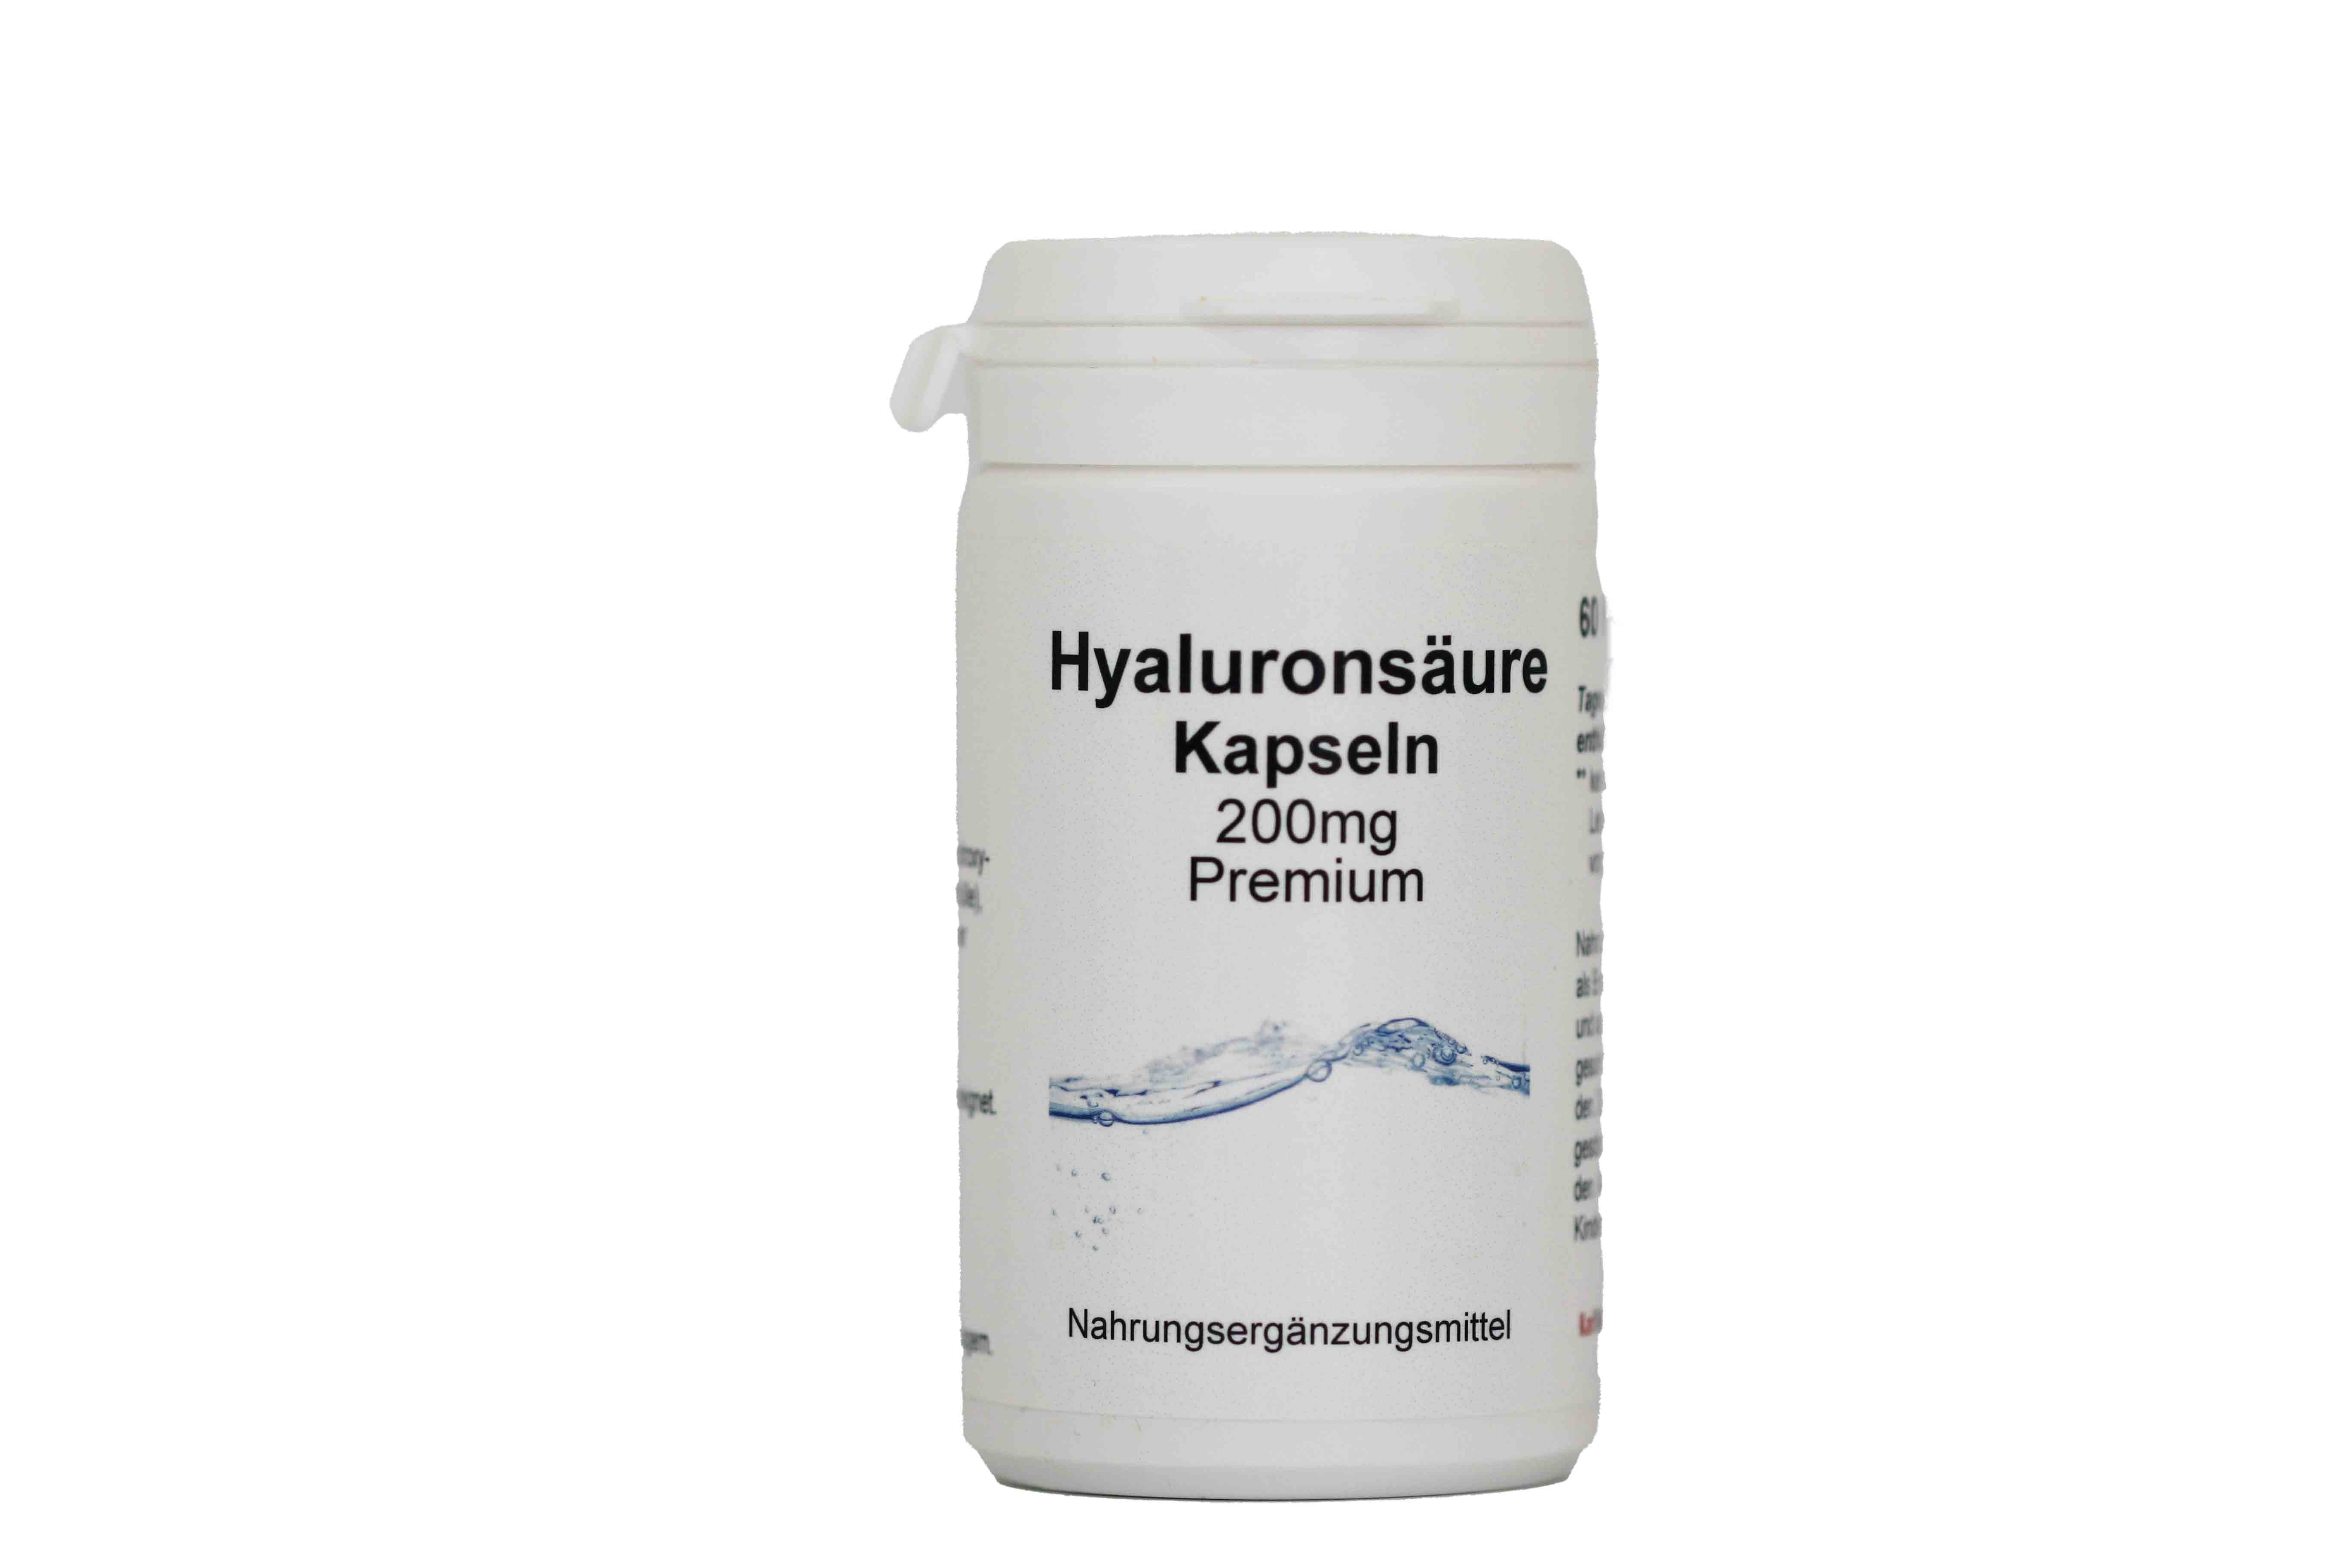 Hyaluronsäure Kapseln – 200mg Premium von Karl Minck Naturheilmittel